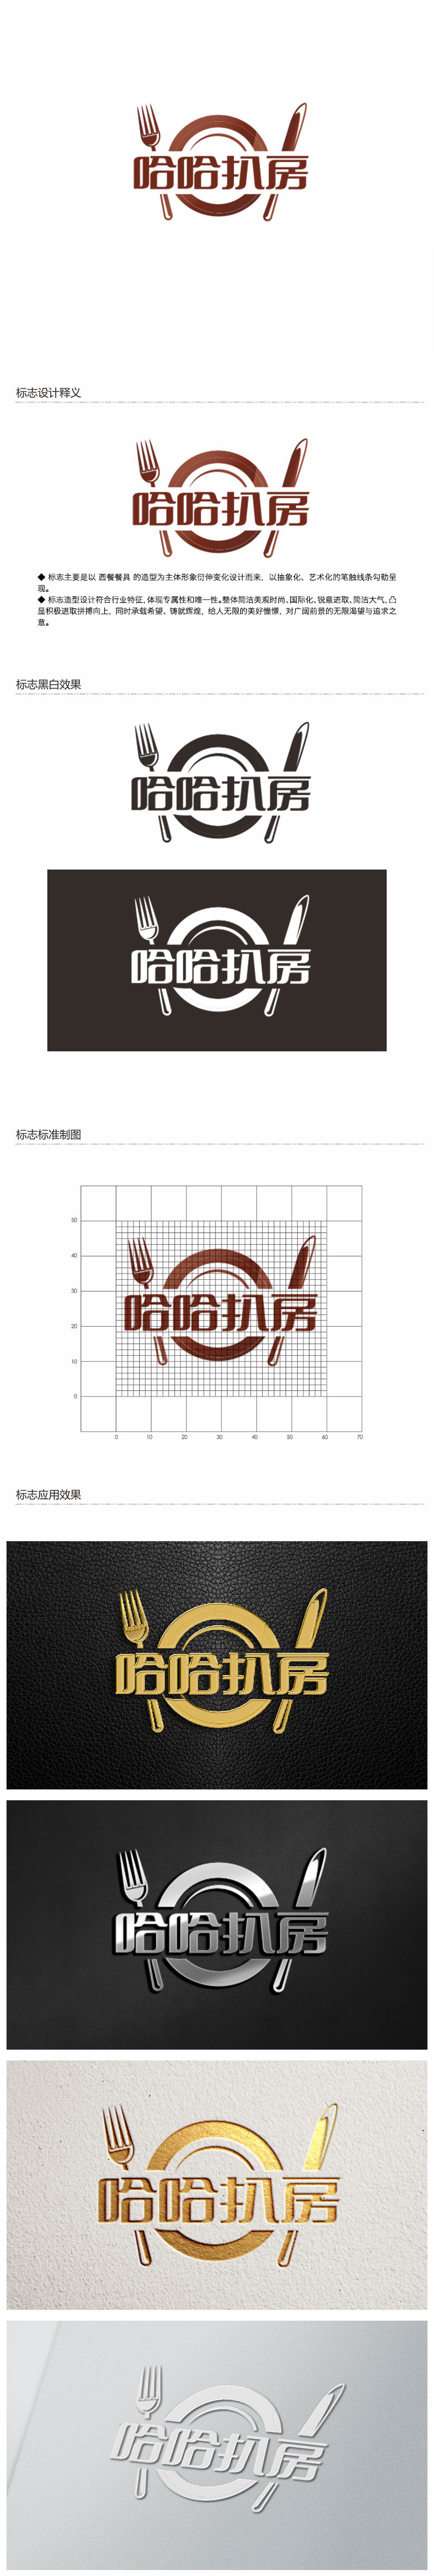 钟炬的哈哈扒房logo设计